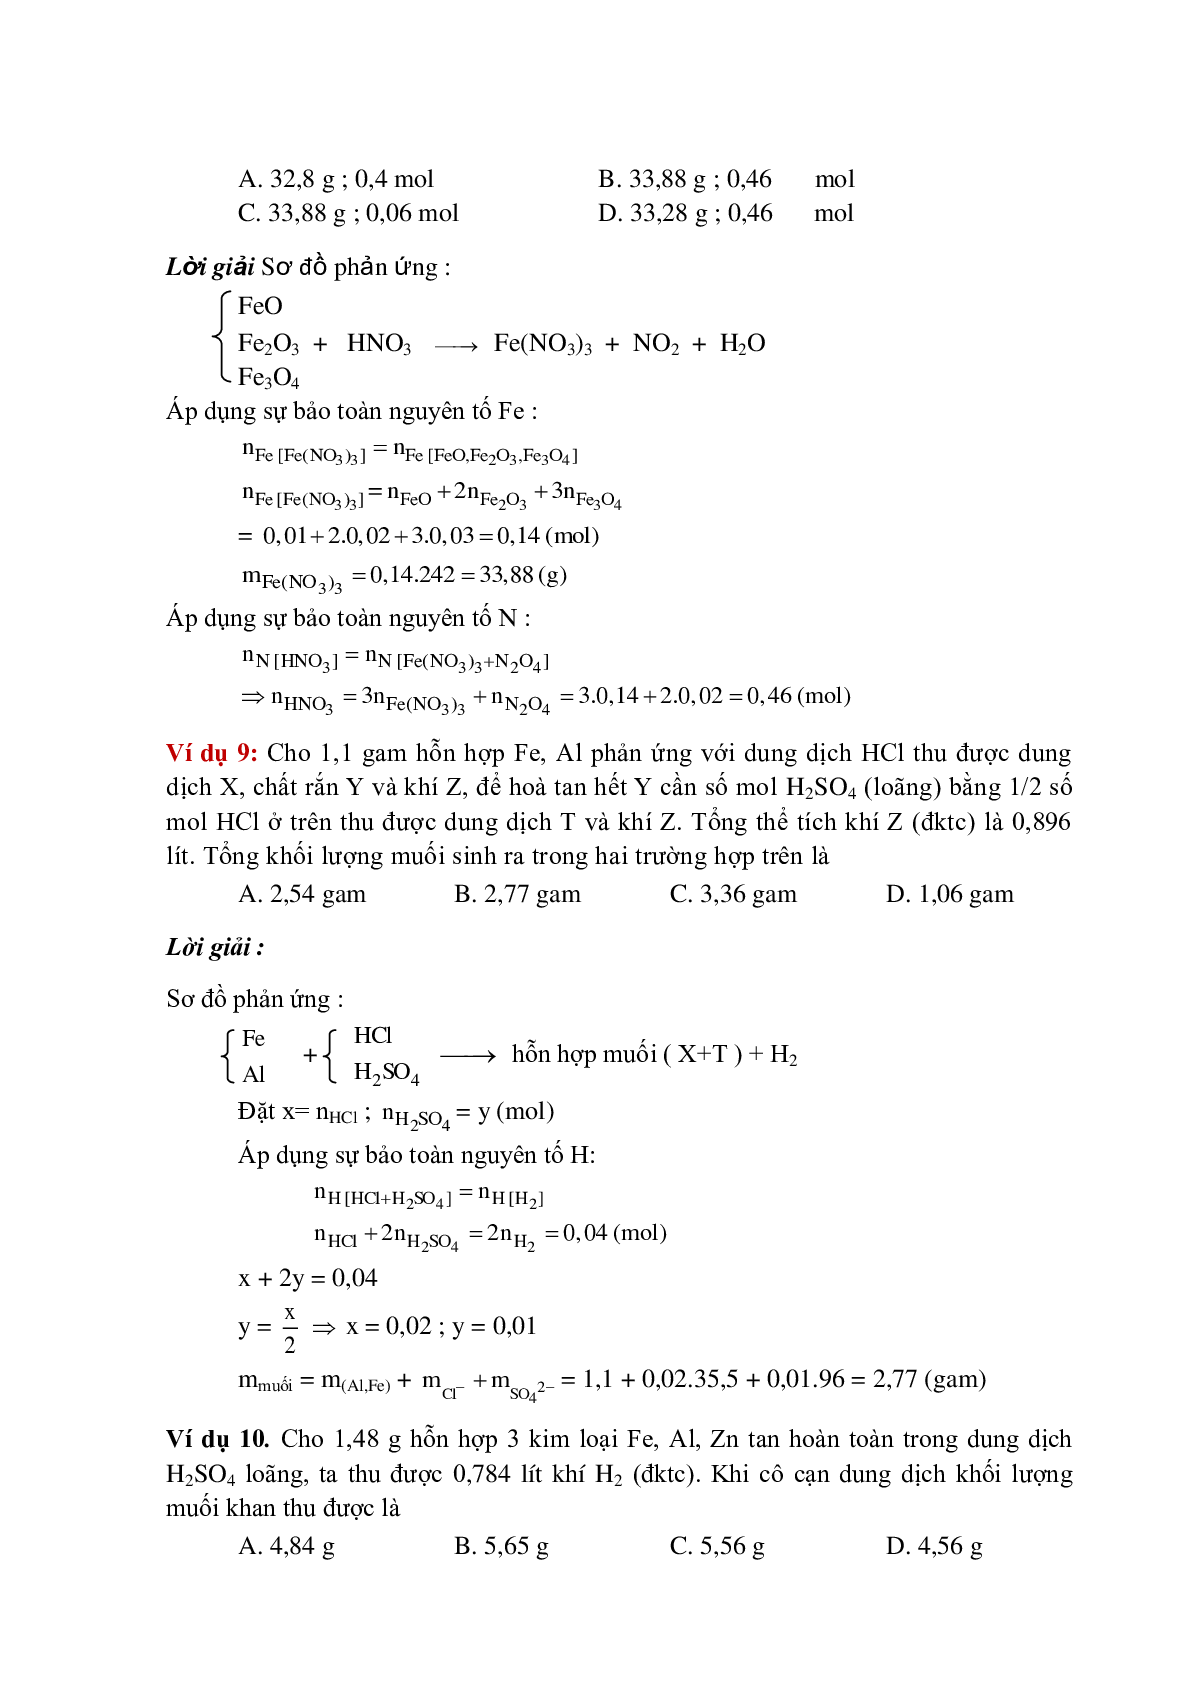 Lý thuyết, bài tập về Phương pháp bảo toàn khối lượng có đáp án (trang 8)